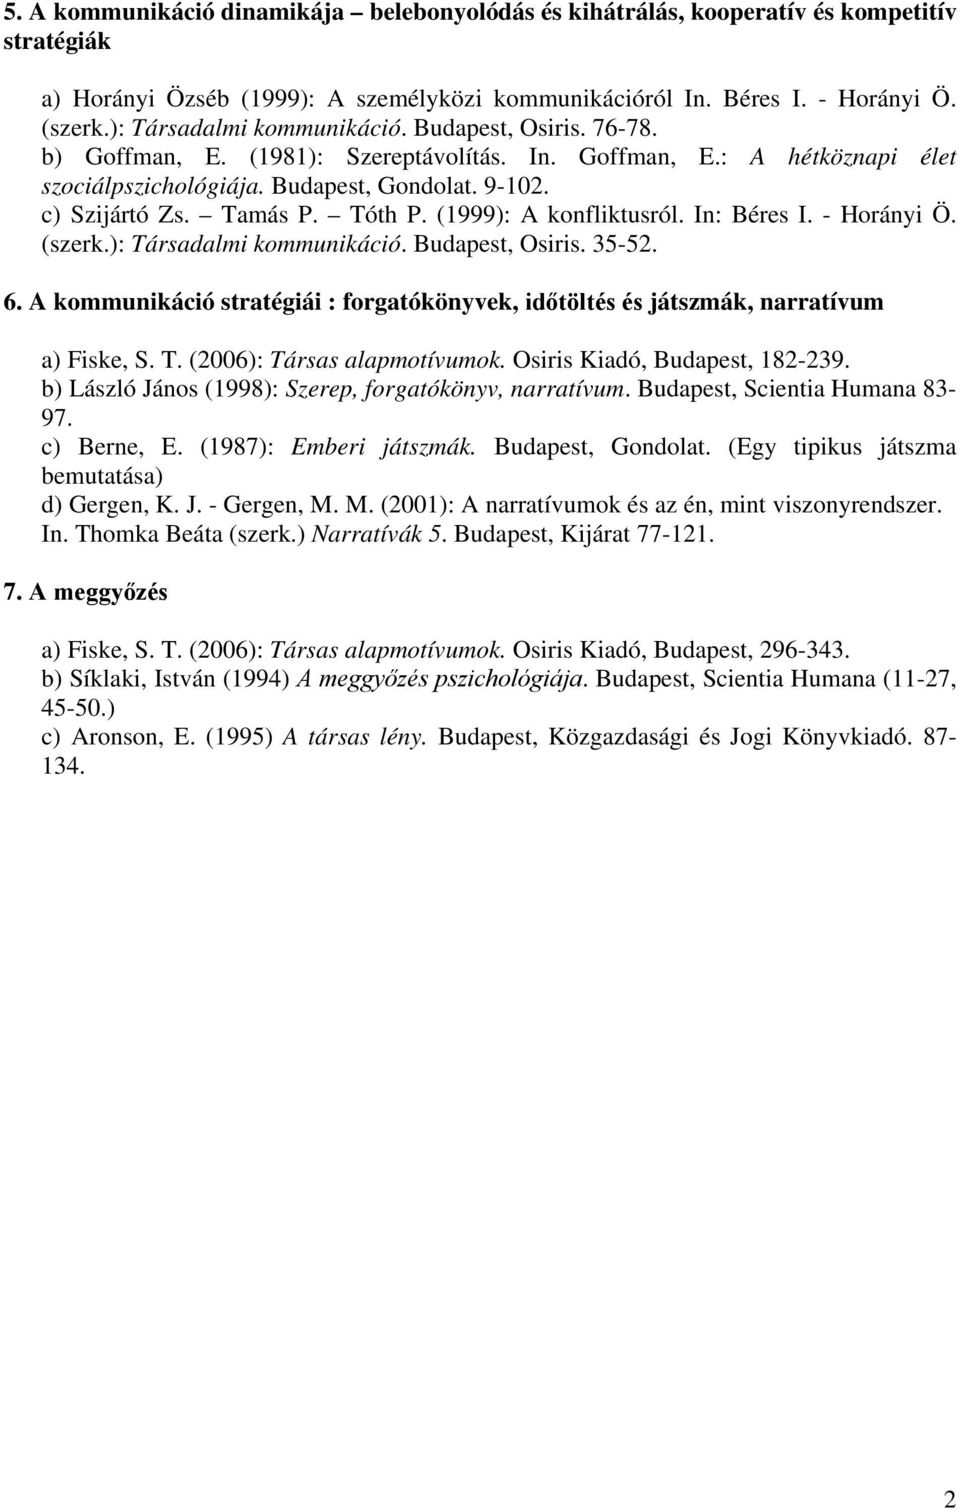 Tamás P. Tóth P. (1999): A konfliktusról. In: Béres I. - Horányi Ö. (szerk.): Társadalmi kommunikáció. Budapest, Osiris. 35-52. 6.